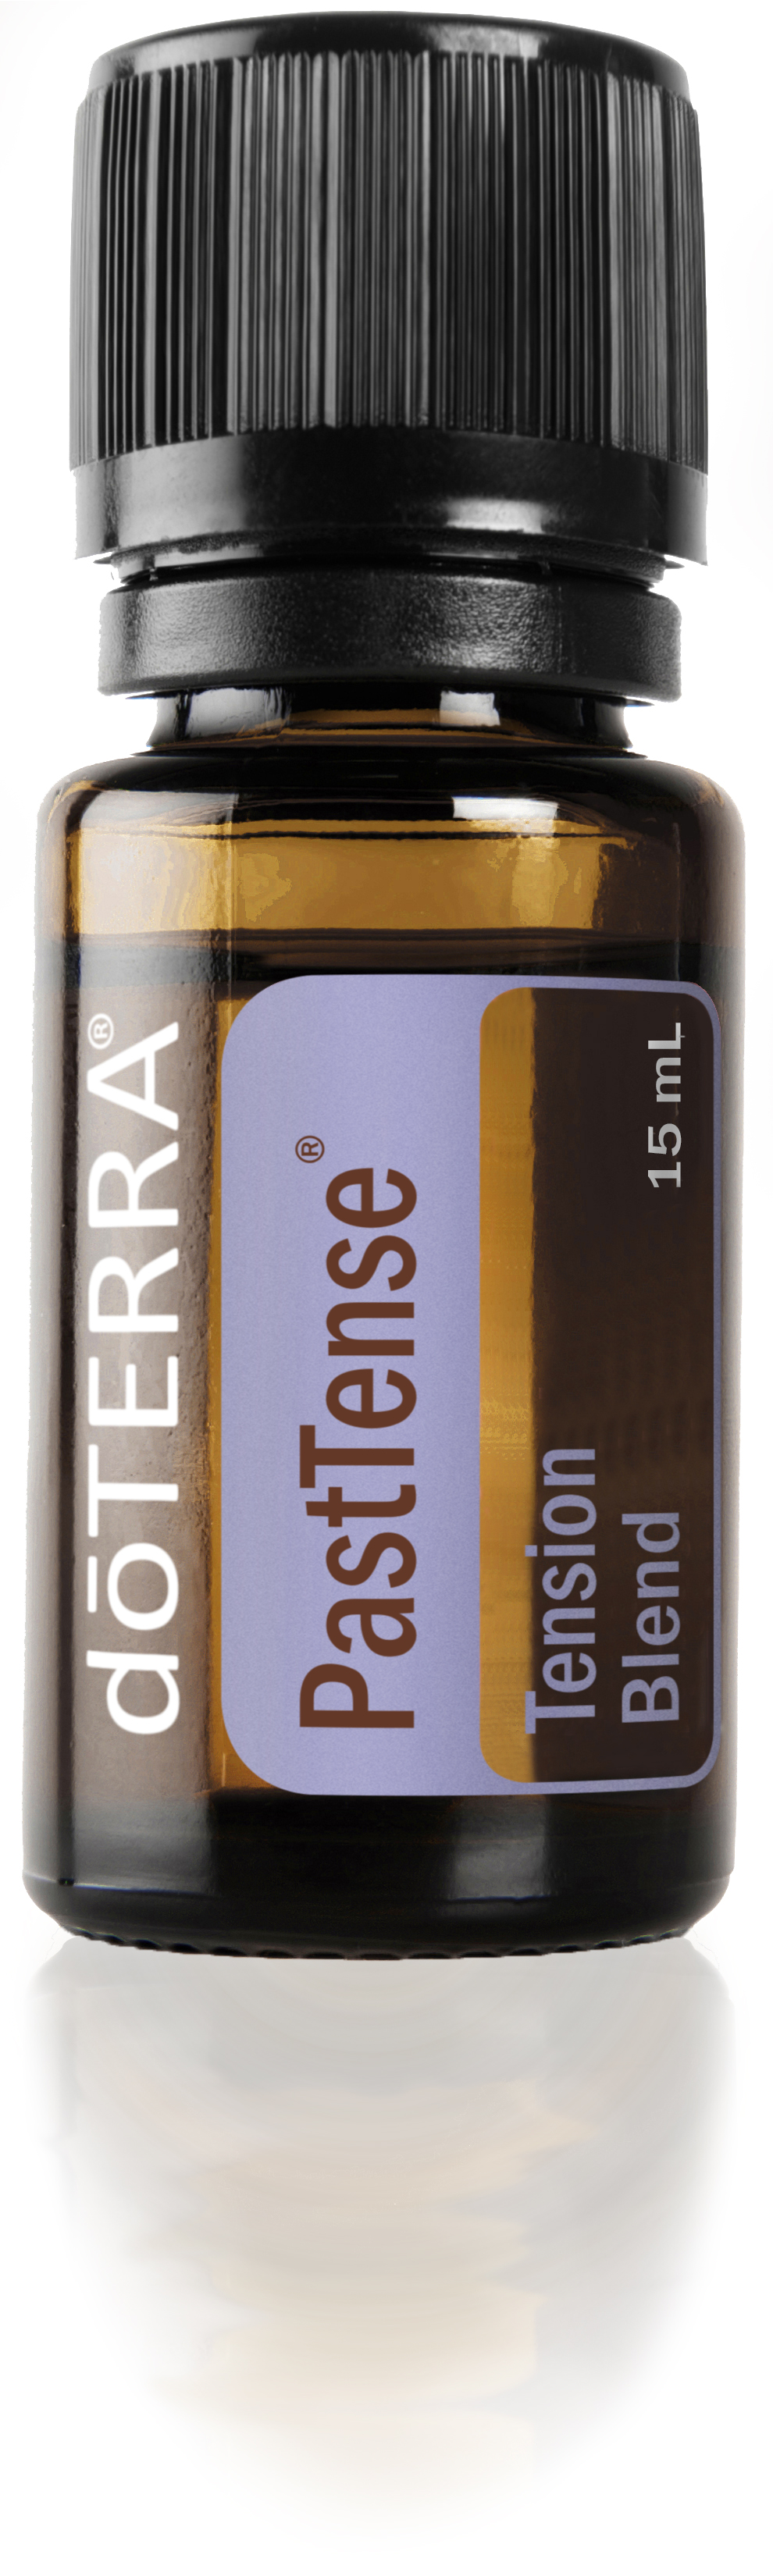 PastTense Oil | Essential Oils